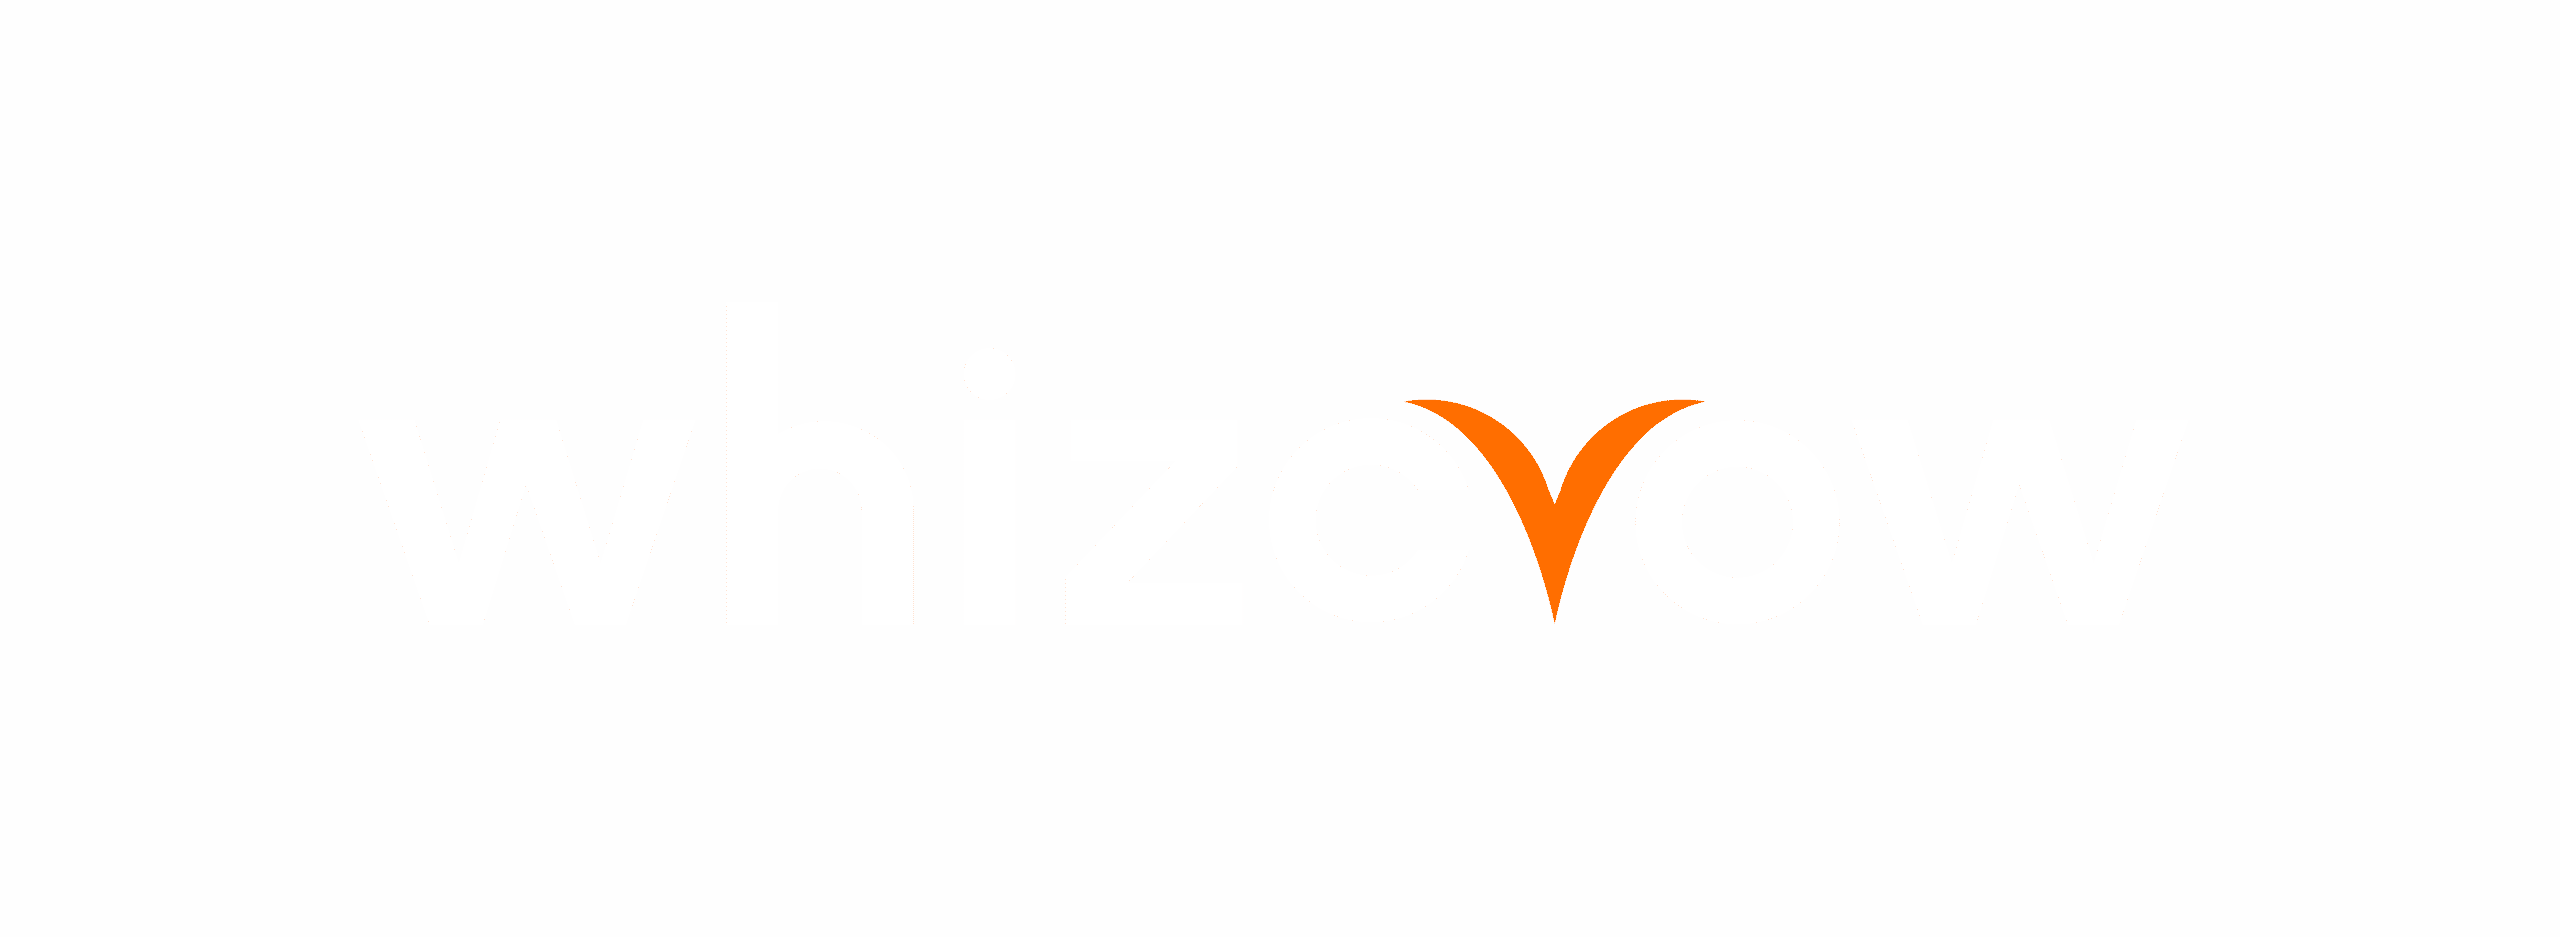 Whizcrow Logo White